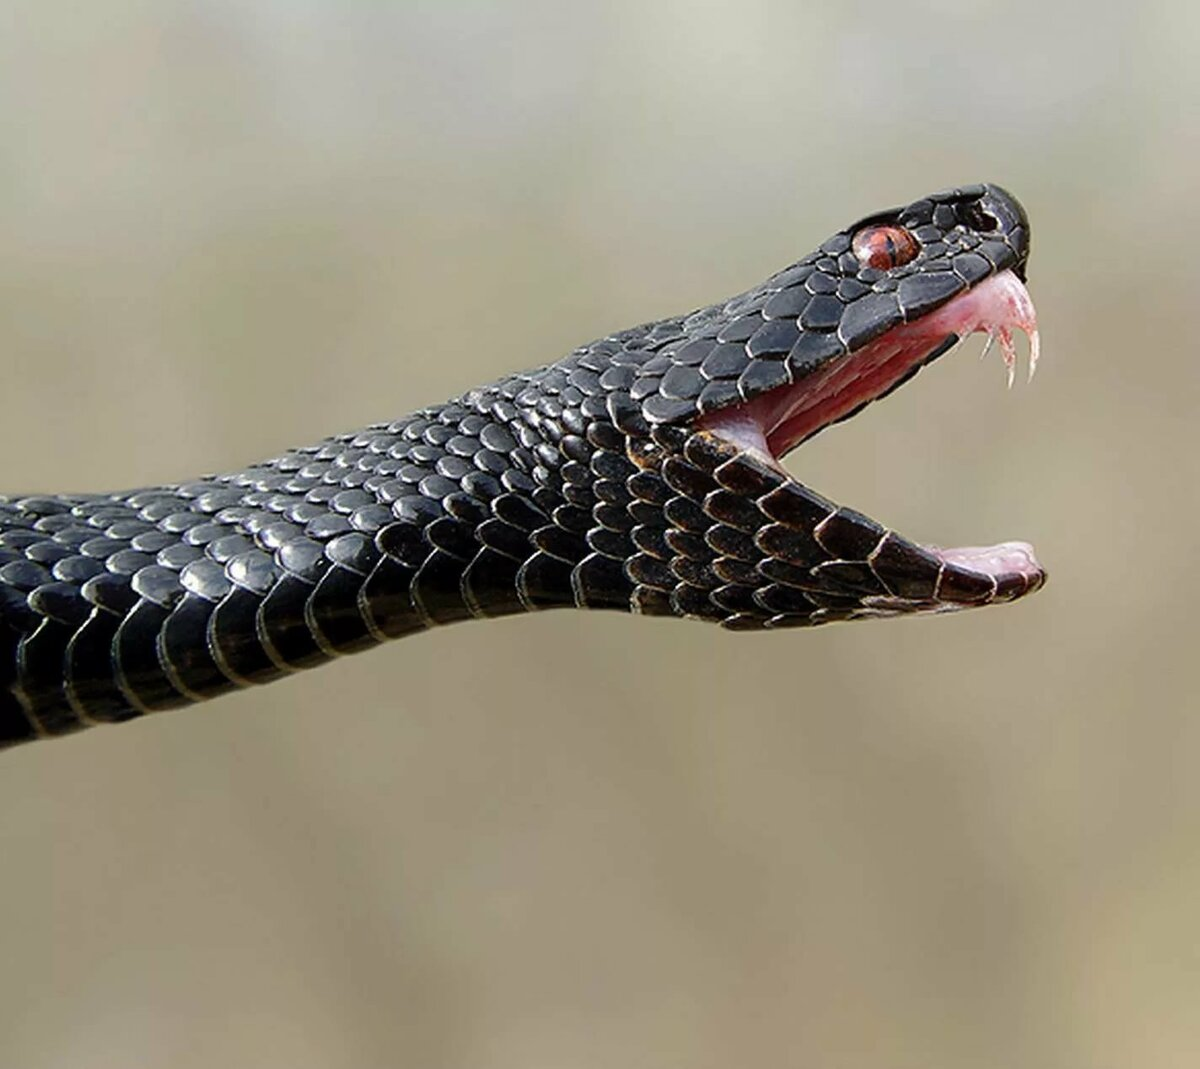 Гадюка Никольского (Vipera nikolskii). Змея гадюка ядовитая. Гадюка Динника. Гадюка обыкновенная черная. Ядовитые зубы змеи